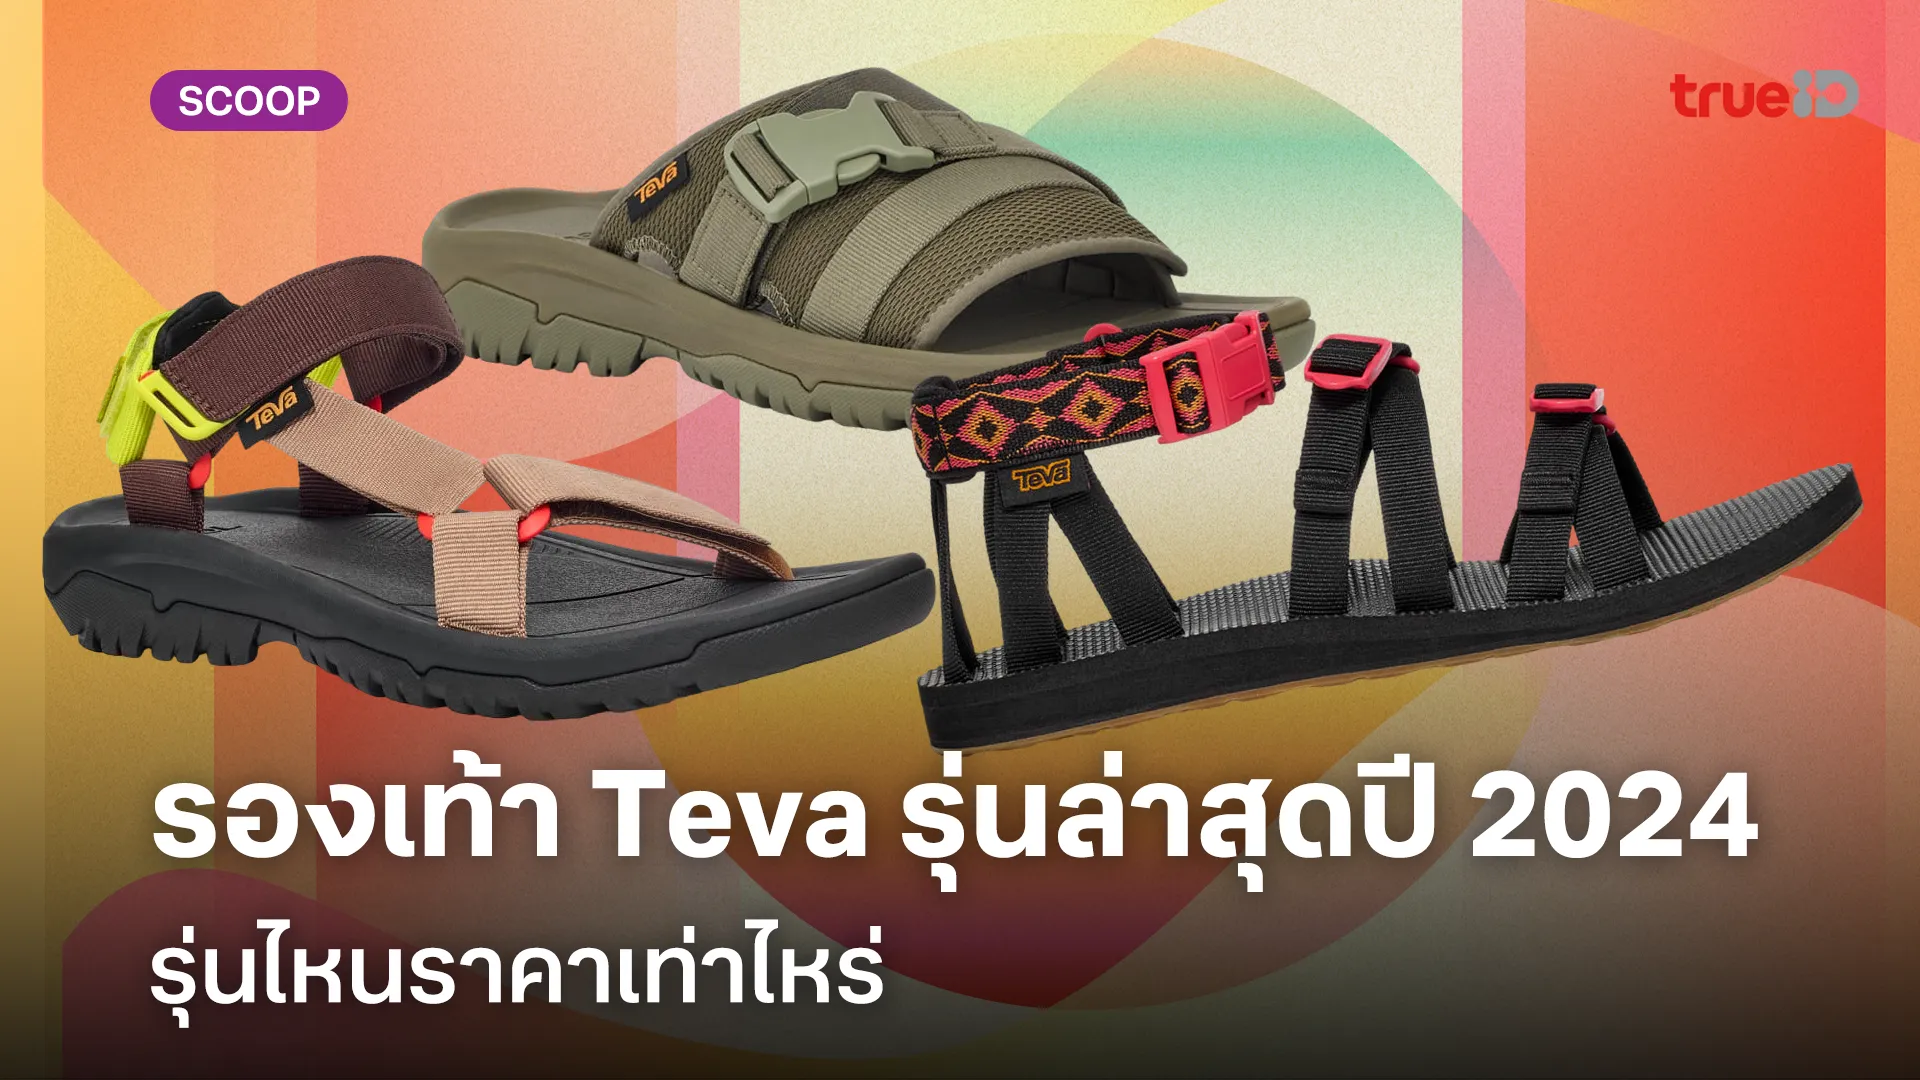 รวมรองเท้า Teva ผู้ชายรุ่นล่าสุดปี 2024 ใส่ทน ลุยสบาย พร้อมส่วนลดลูกค้าทรู